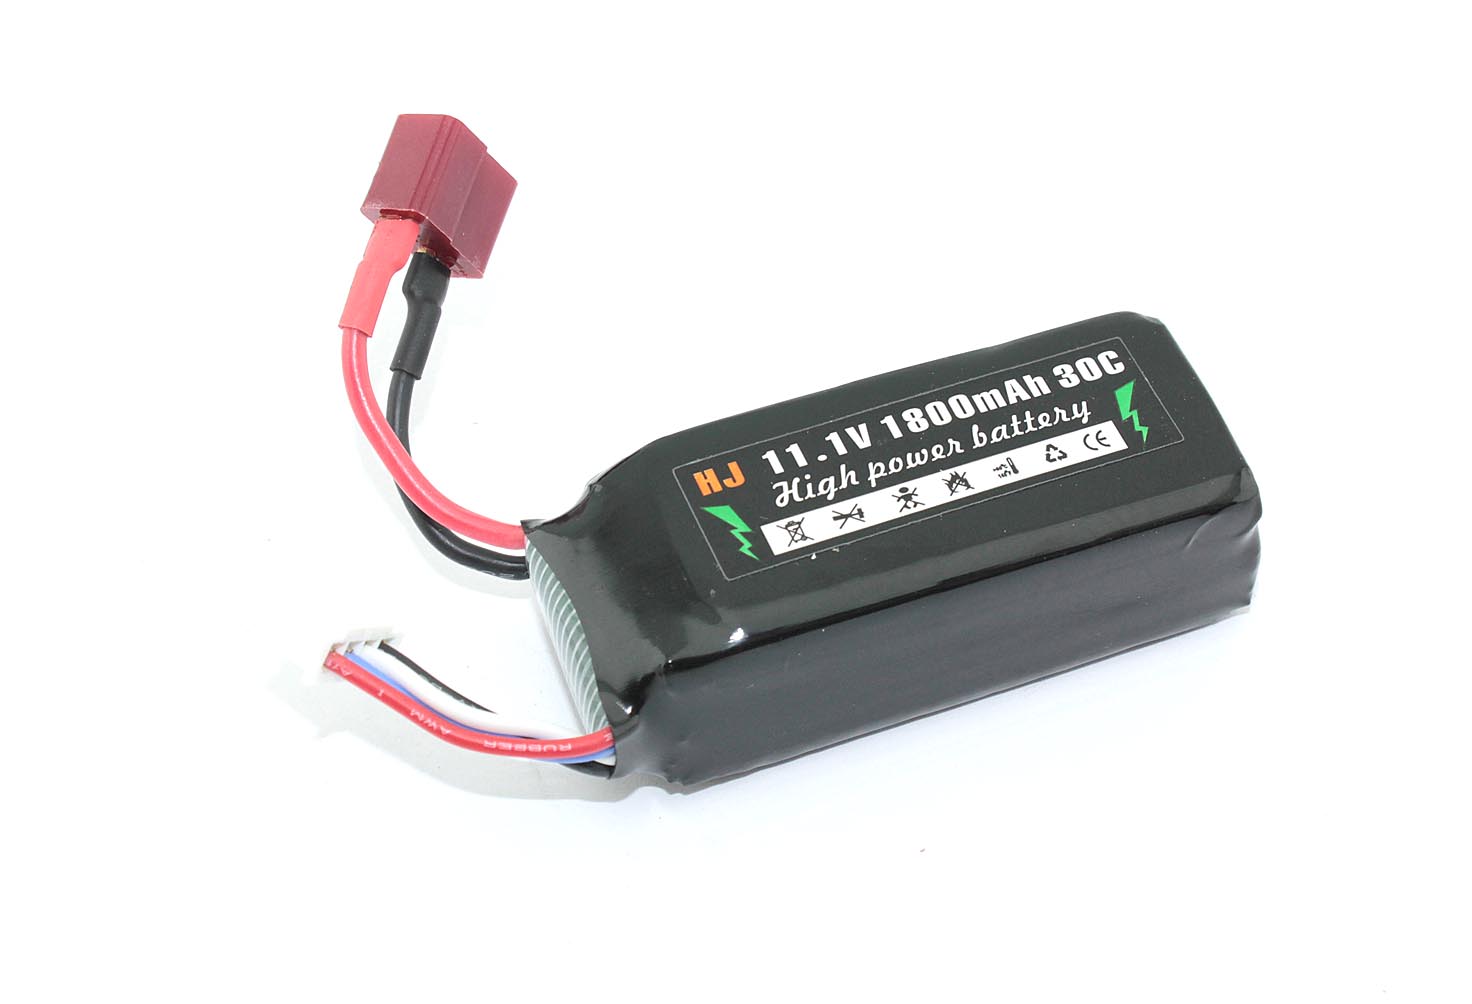 коннектор hyperline plug 8p8c u c5 sh разъем rj 45 8p8c категория 5е экранированный Аккумулятор Li-Pol 11.1v 802555 1800mah разъем T-plug